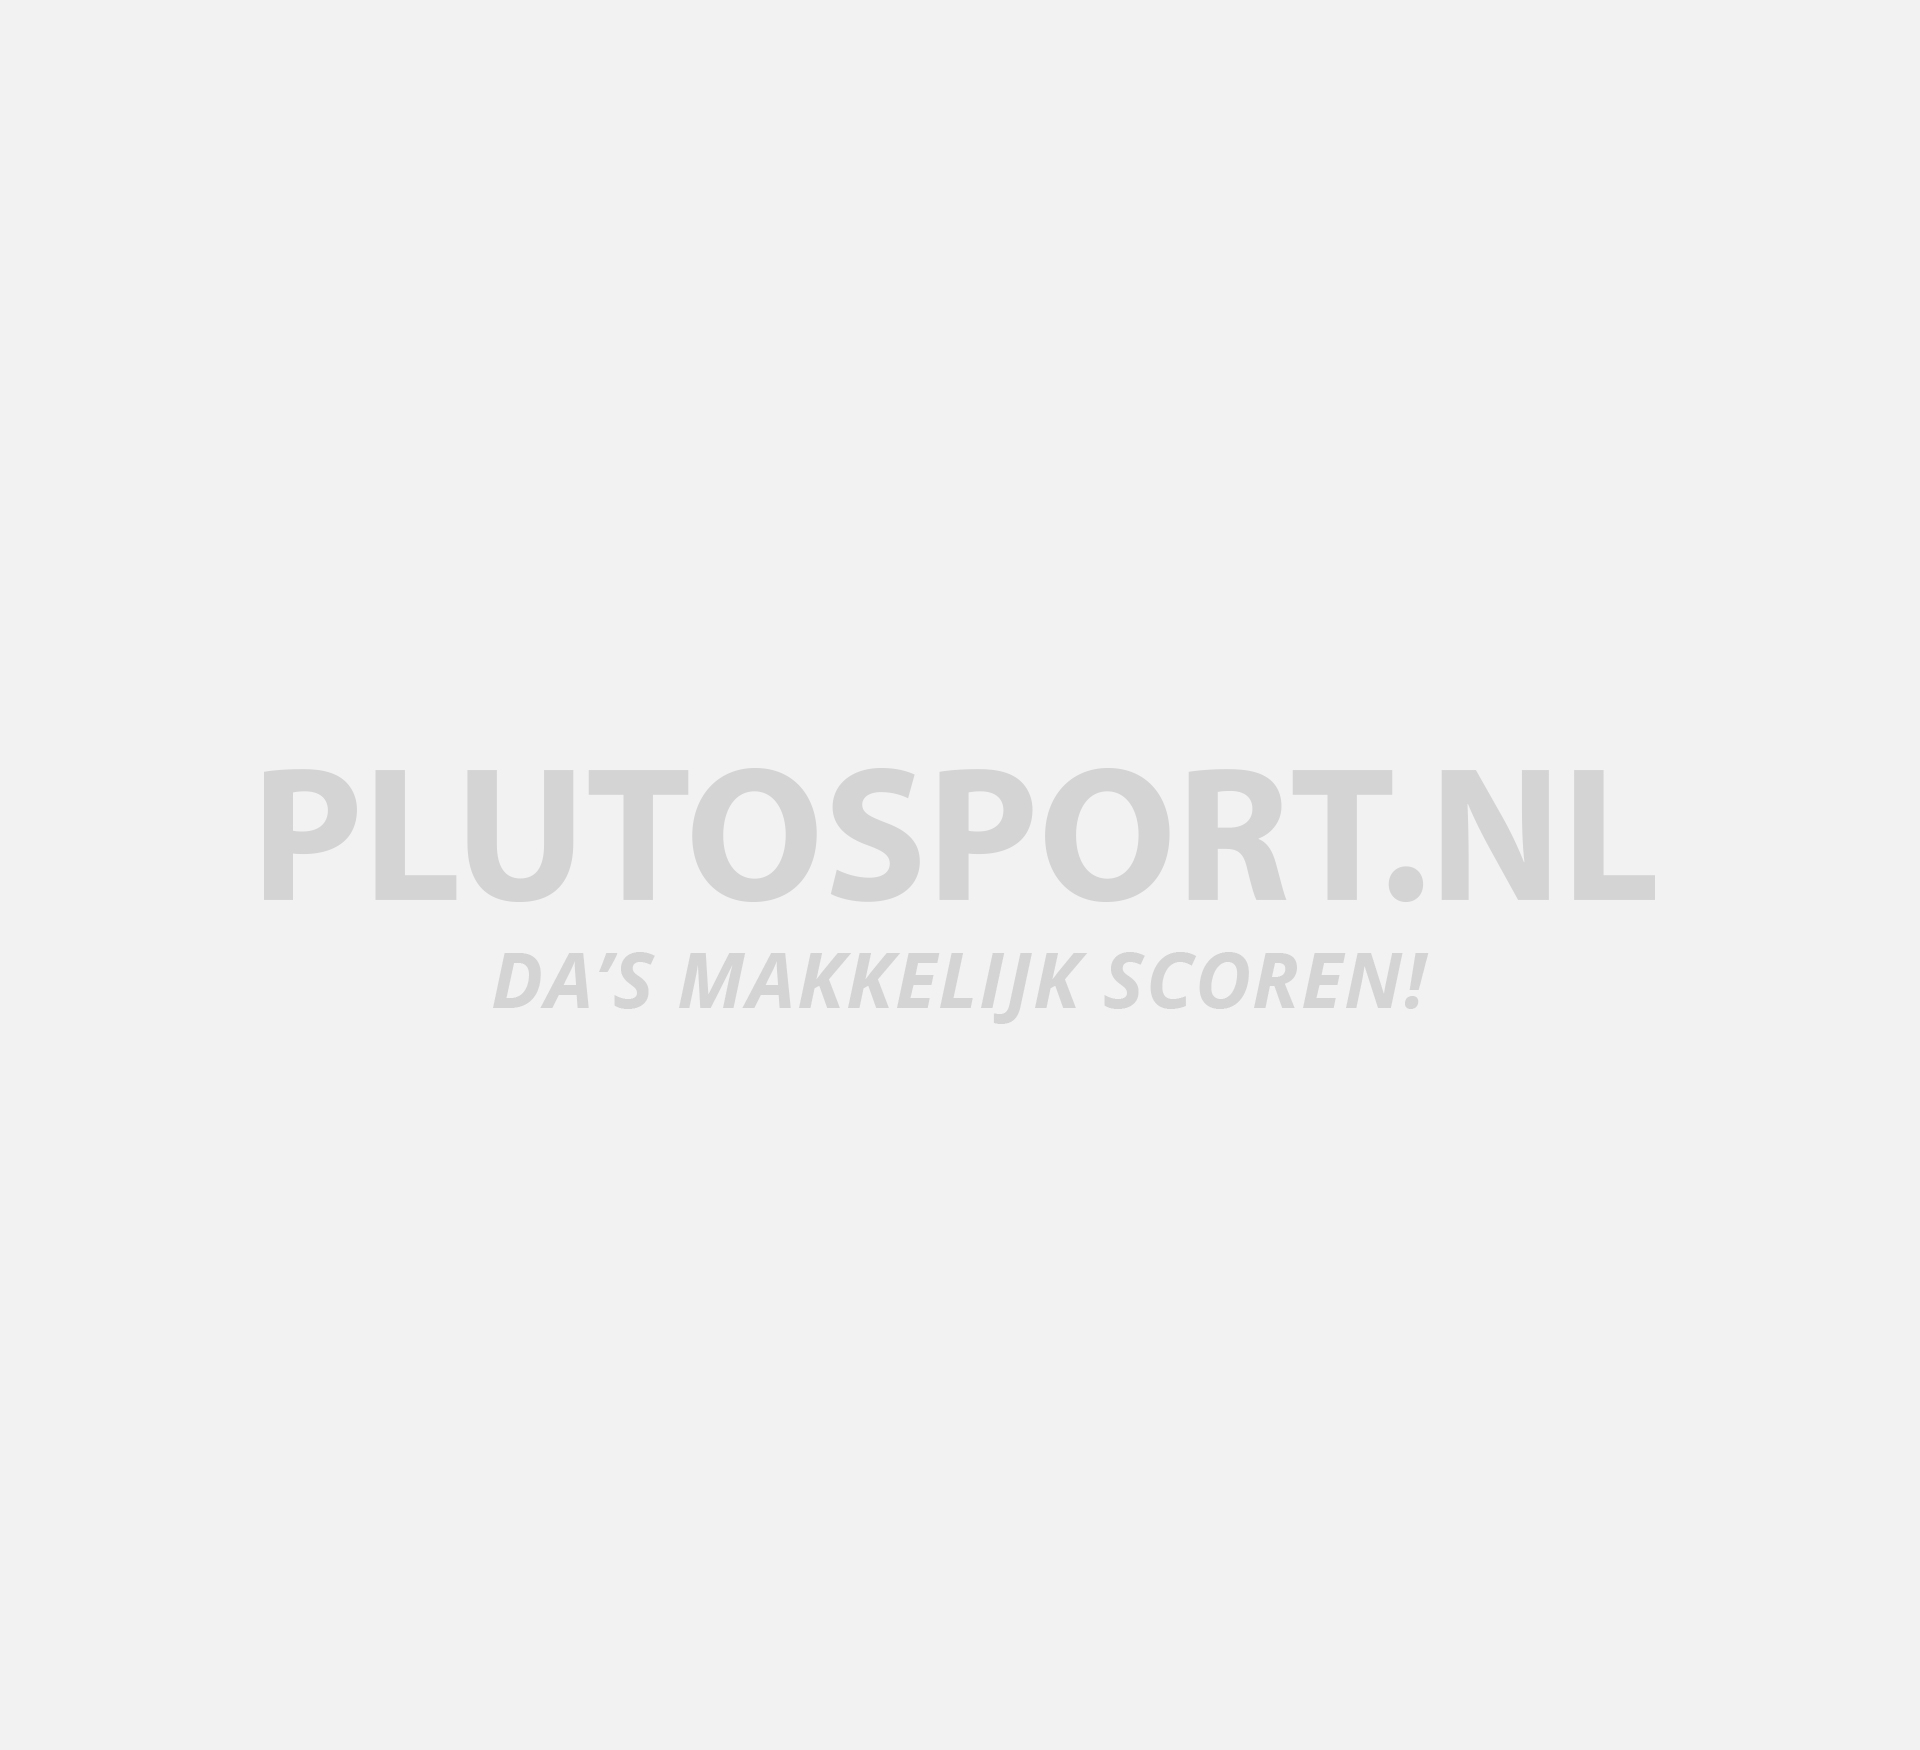 Oost Sterkte Thuisland Volleybalschoenen voor dames kopen? Alle topmerken! | Plutosport